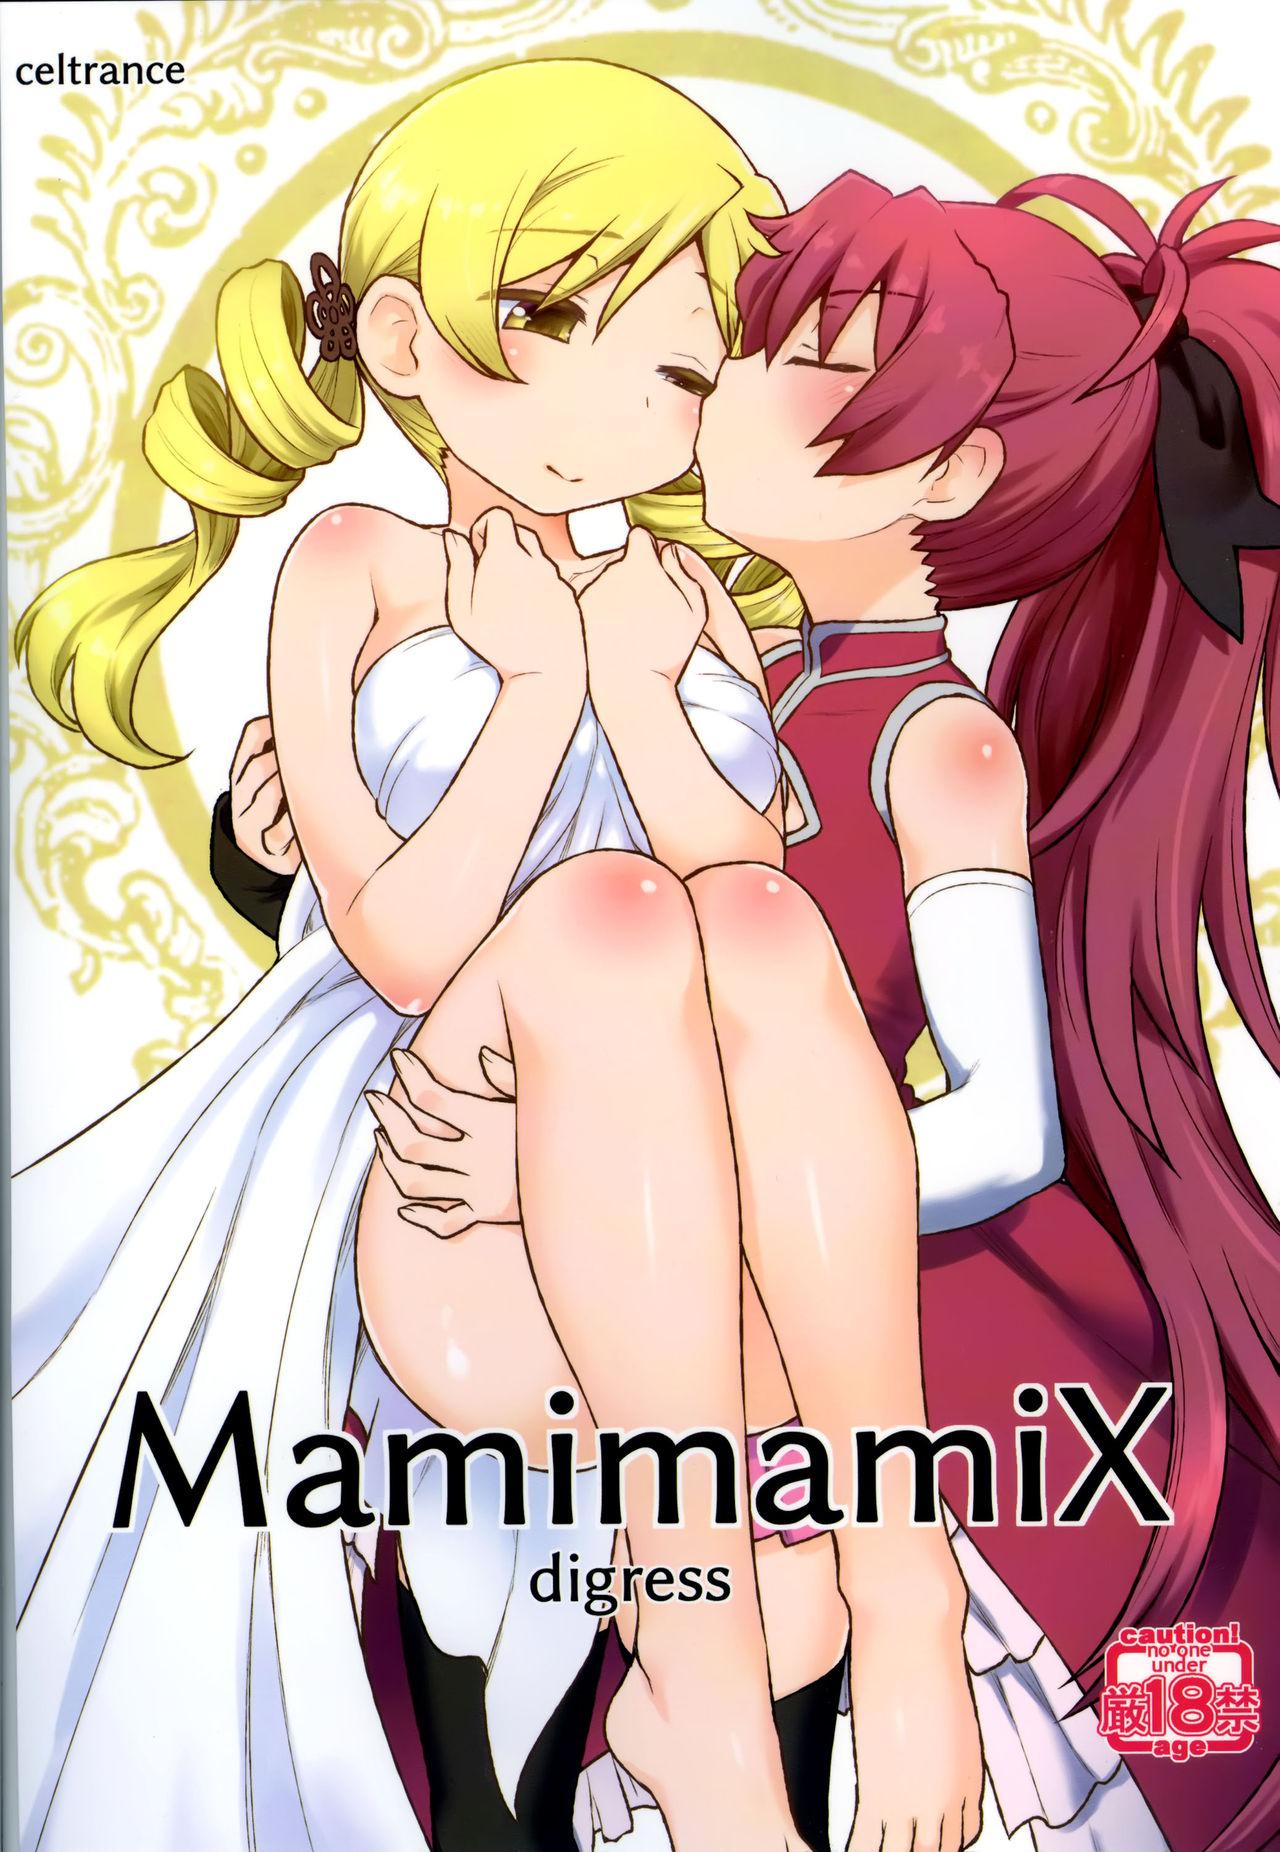 Eating MamimamiX digress - Puella magi madoka magica Asshole - Page 2